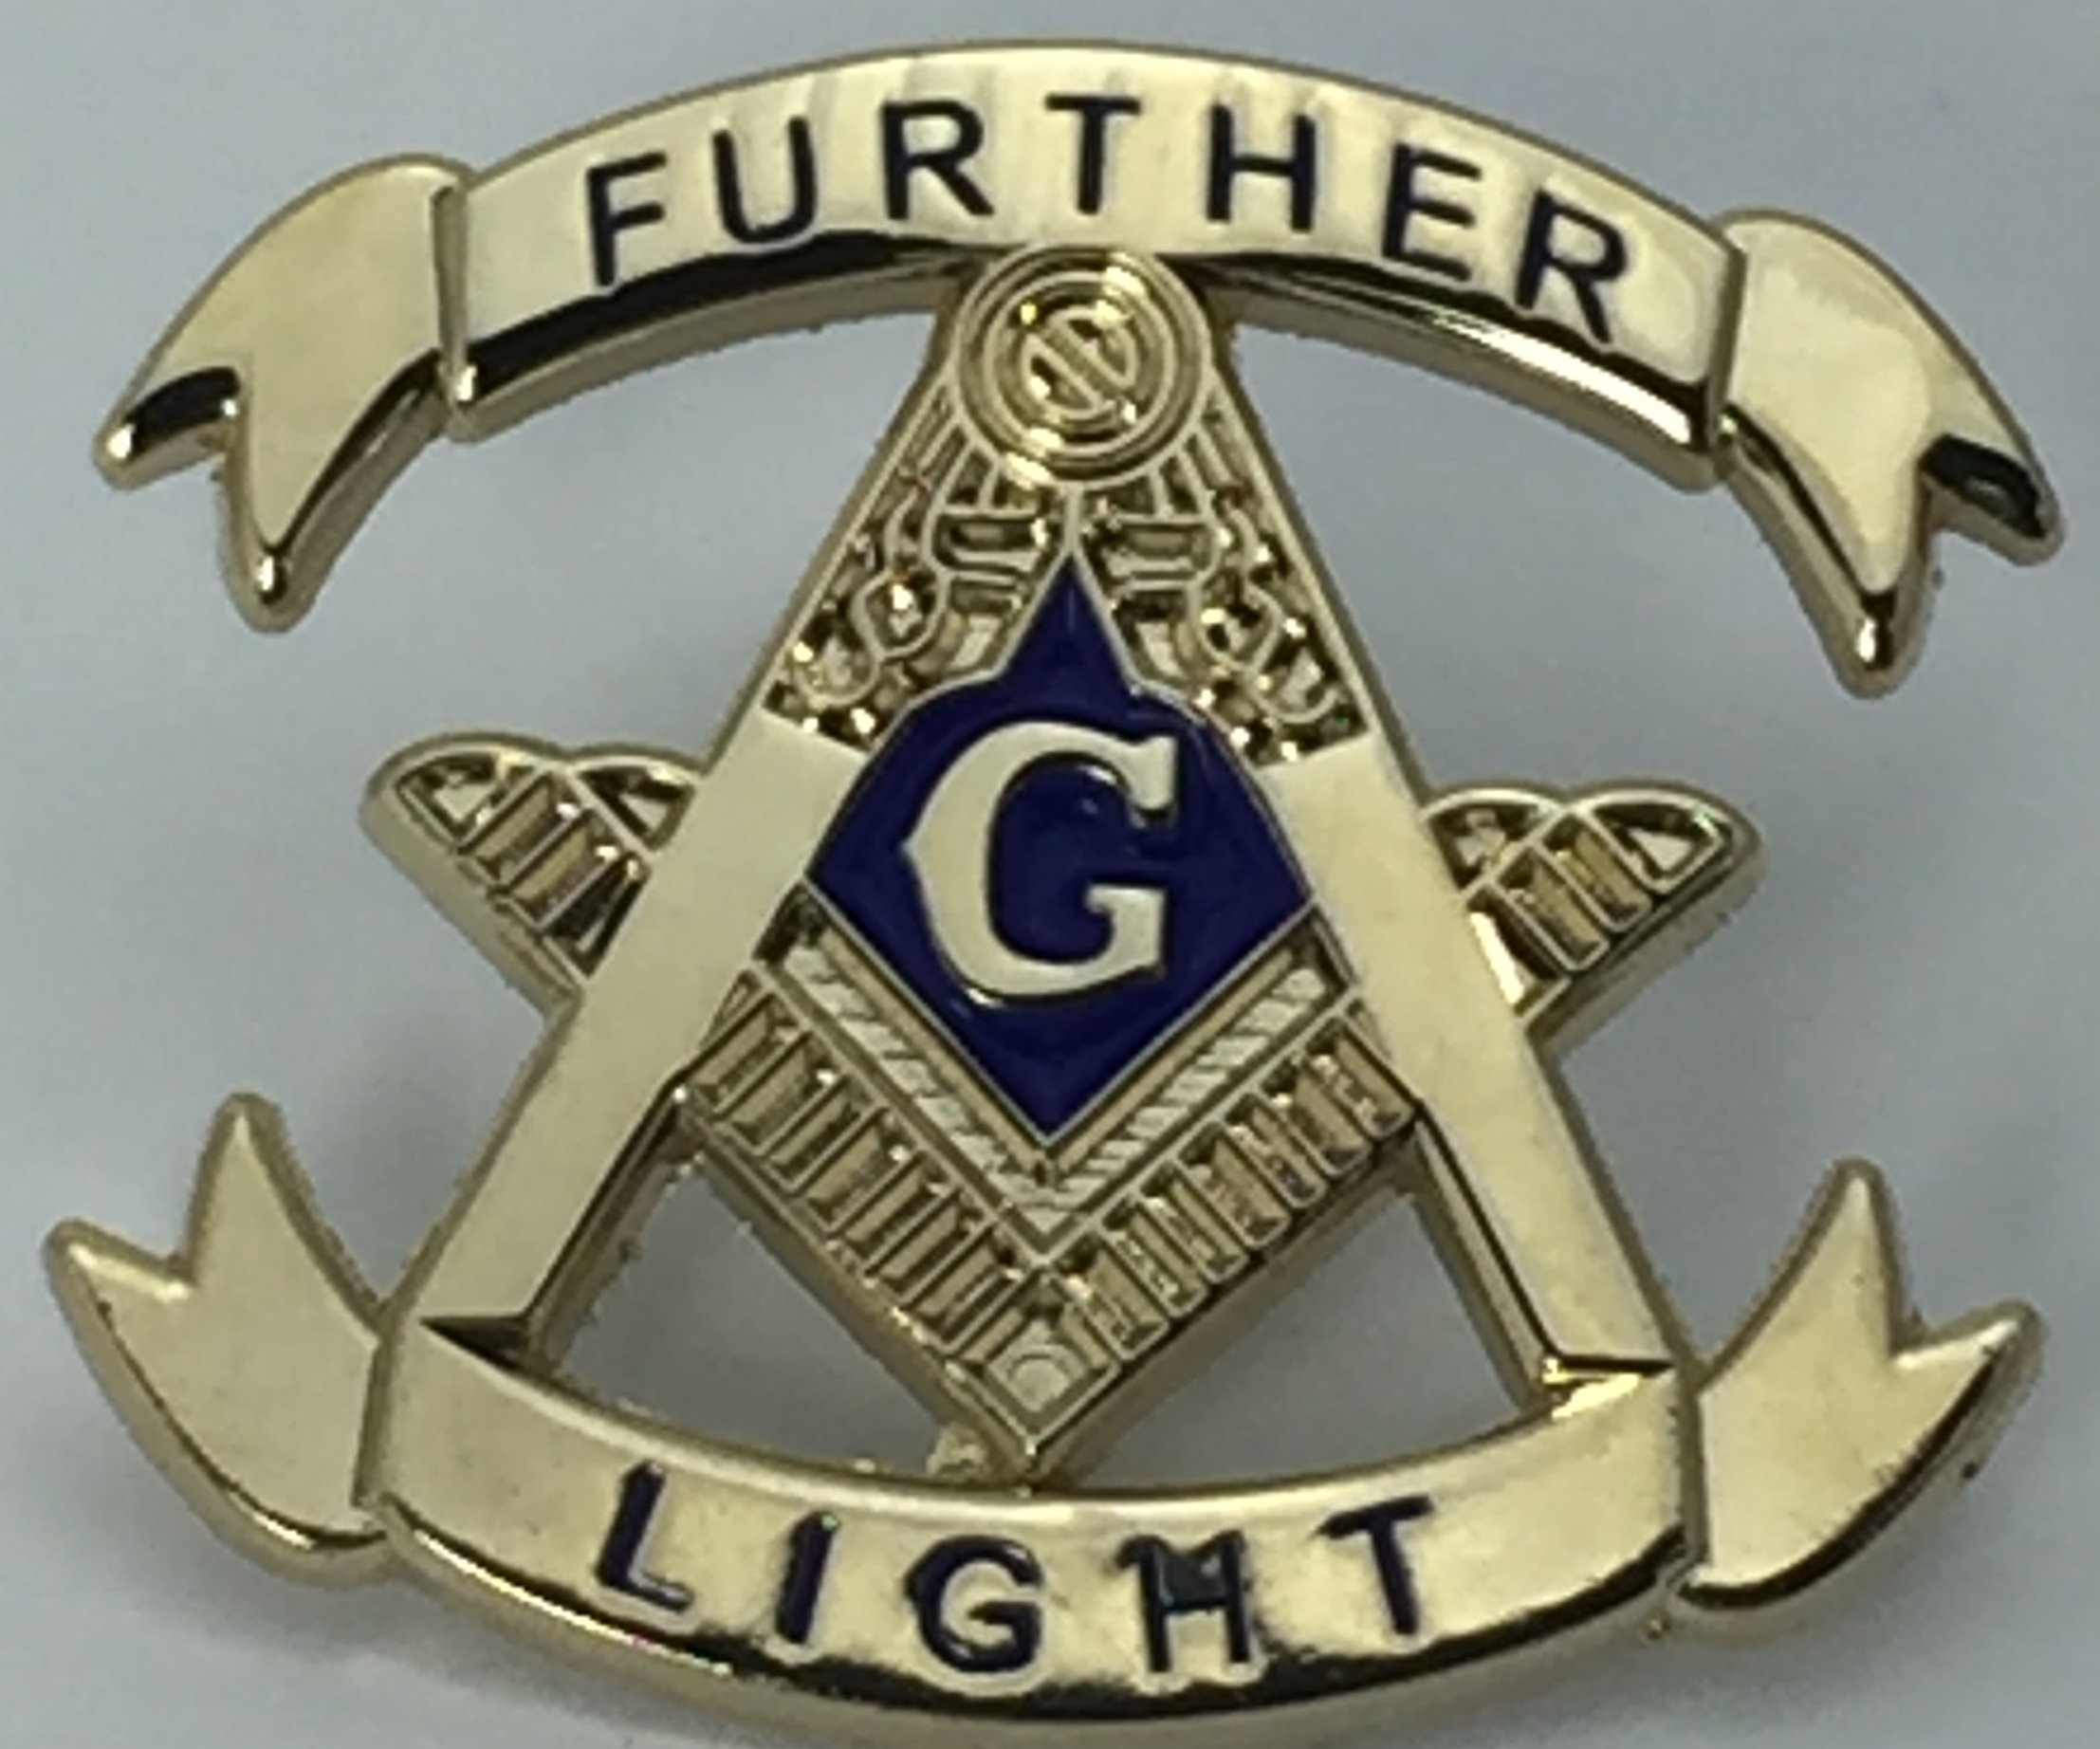 Further Light Square & Compasses Masonic Lapel Pin 